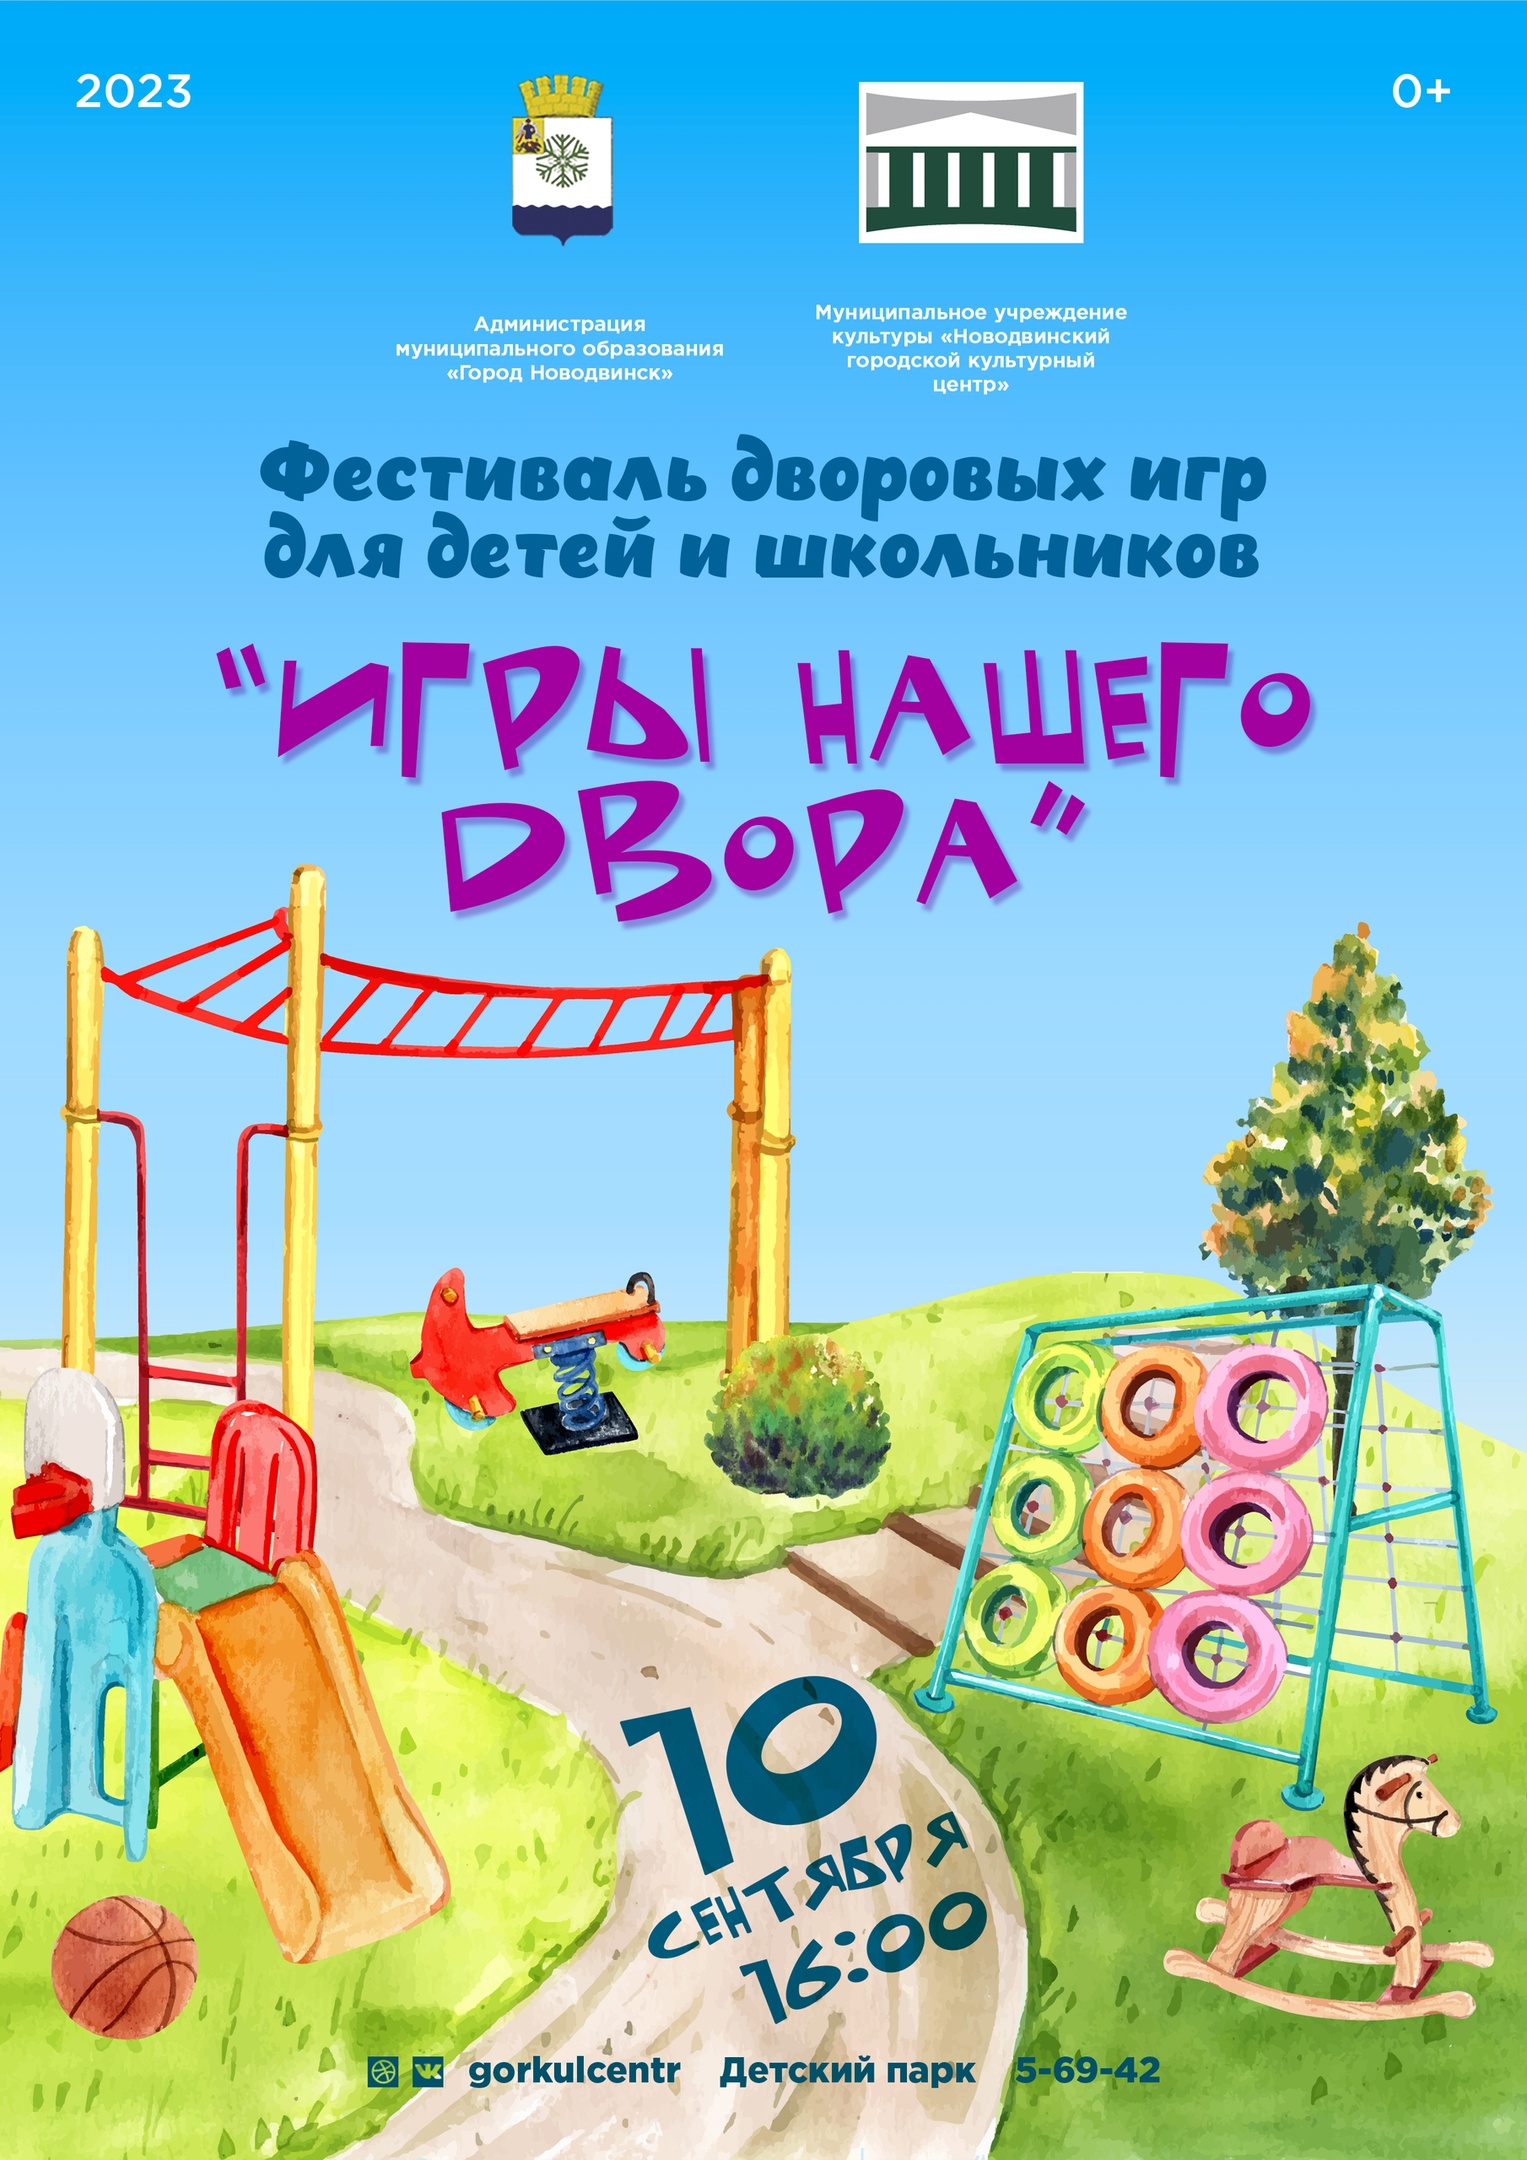 Приглашаем всех на наше мероприятие — фестиваль дворовых игр для детей и школьников «Игры нашего двора»!